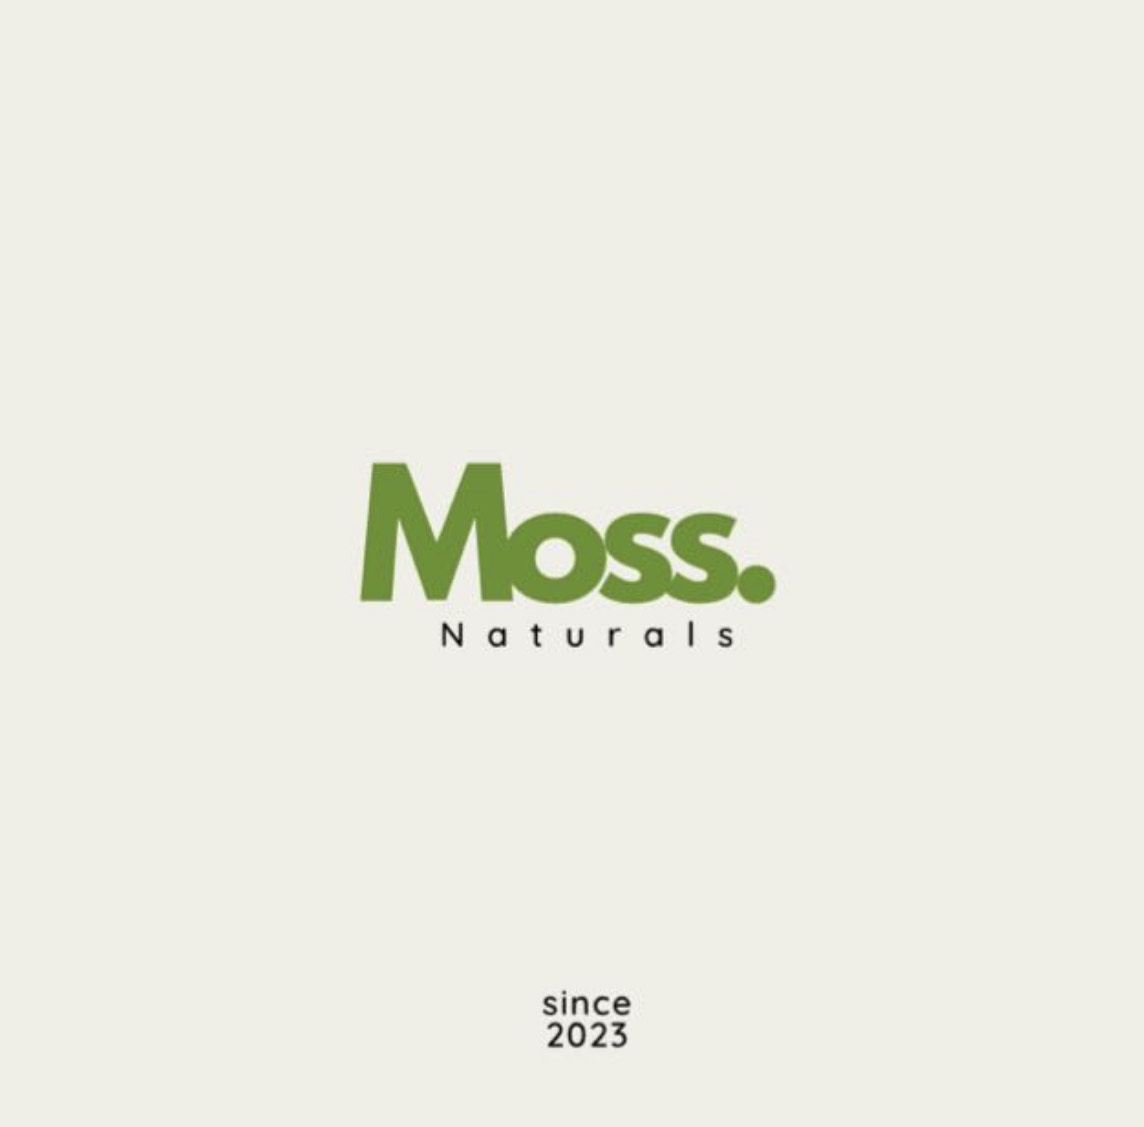 Moss Naturals